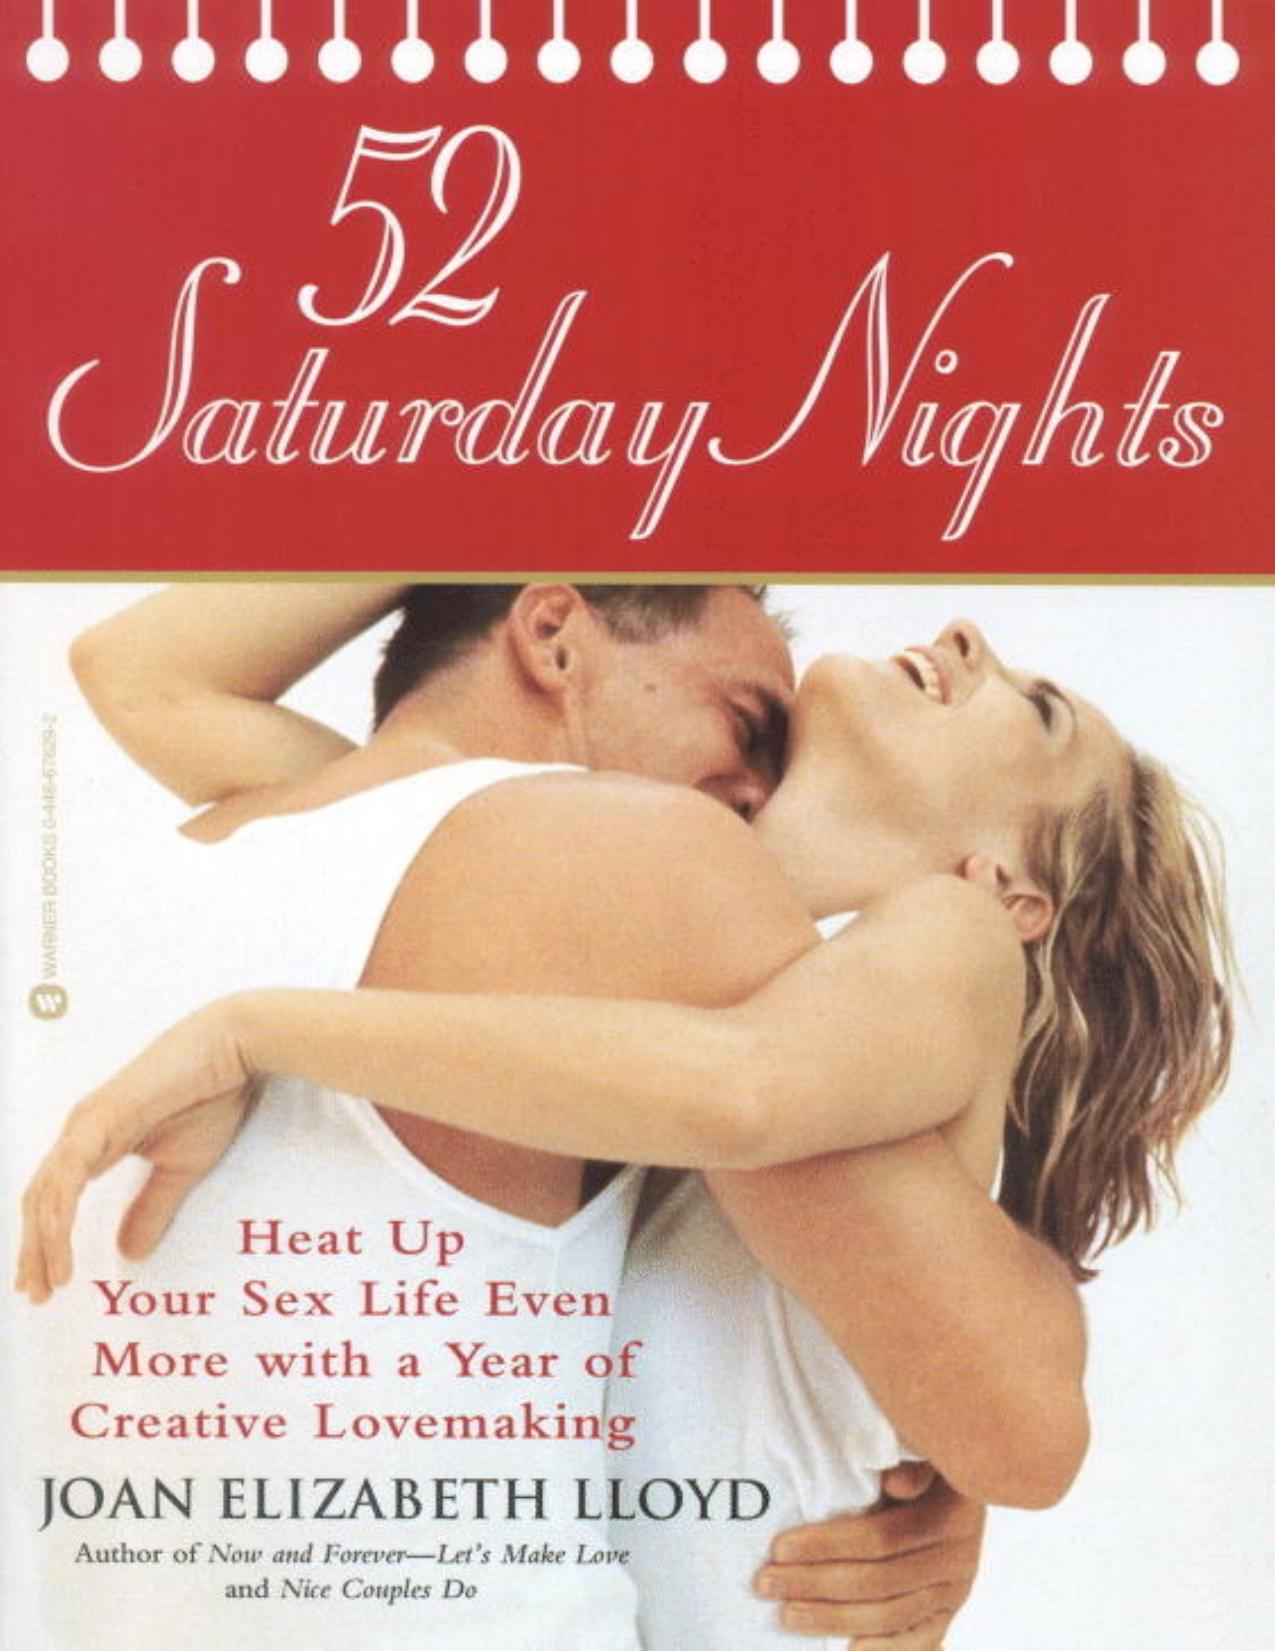 52 Saturday Nights by Joan Elizabeth Lloyd